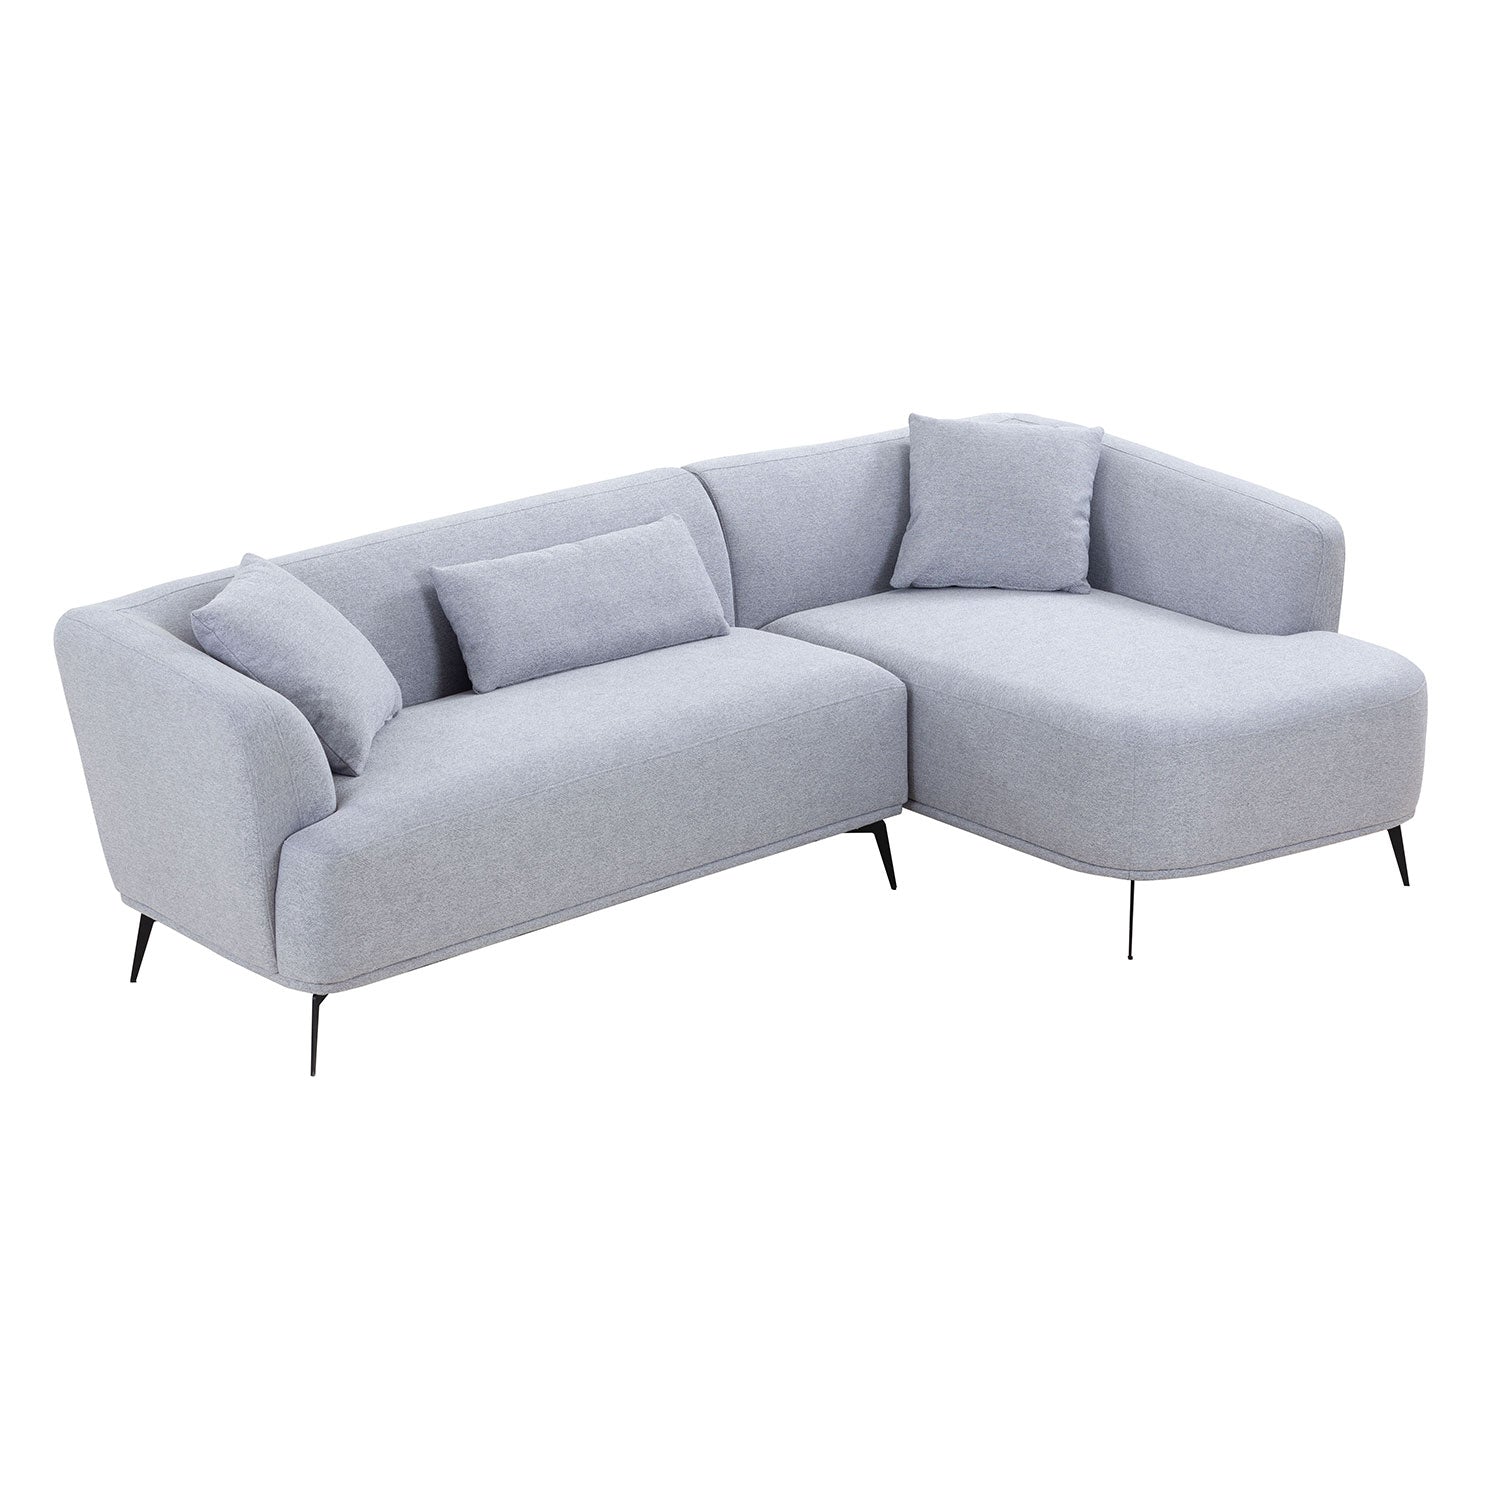 Justone Modern Upholstered Sectional - Light Gray